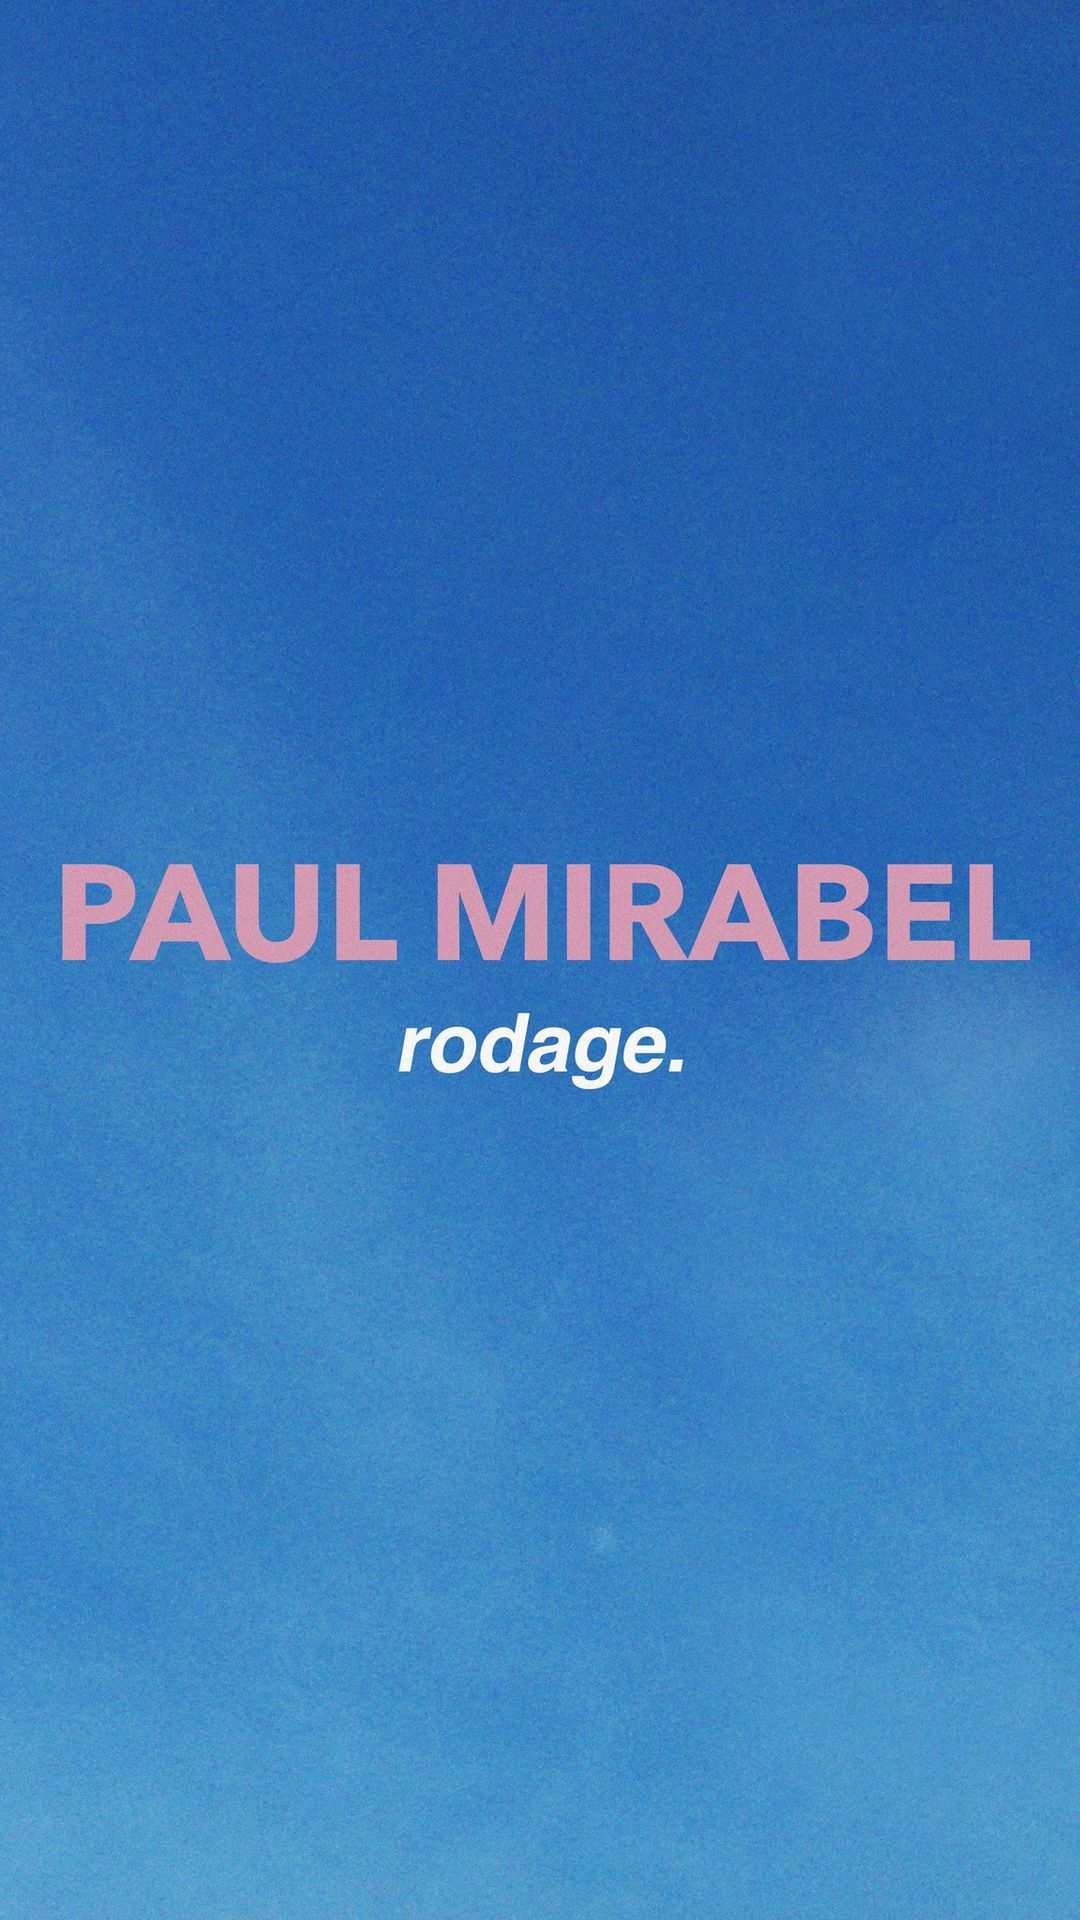 Paul Mirabel - Rodage - La Perche Comedy Club \/\/\/ COMPLET \/\/\/ @Barouf 